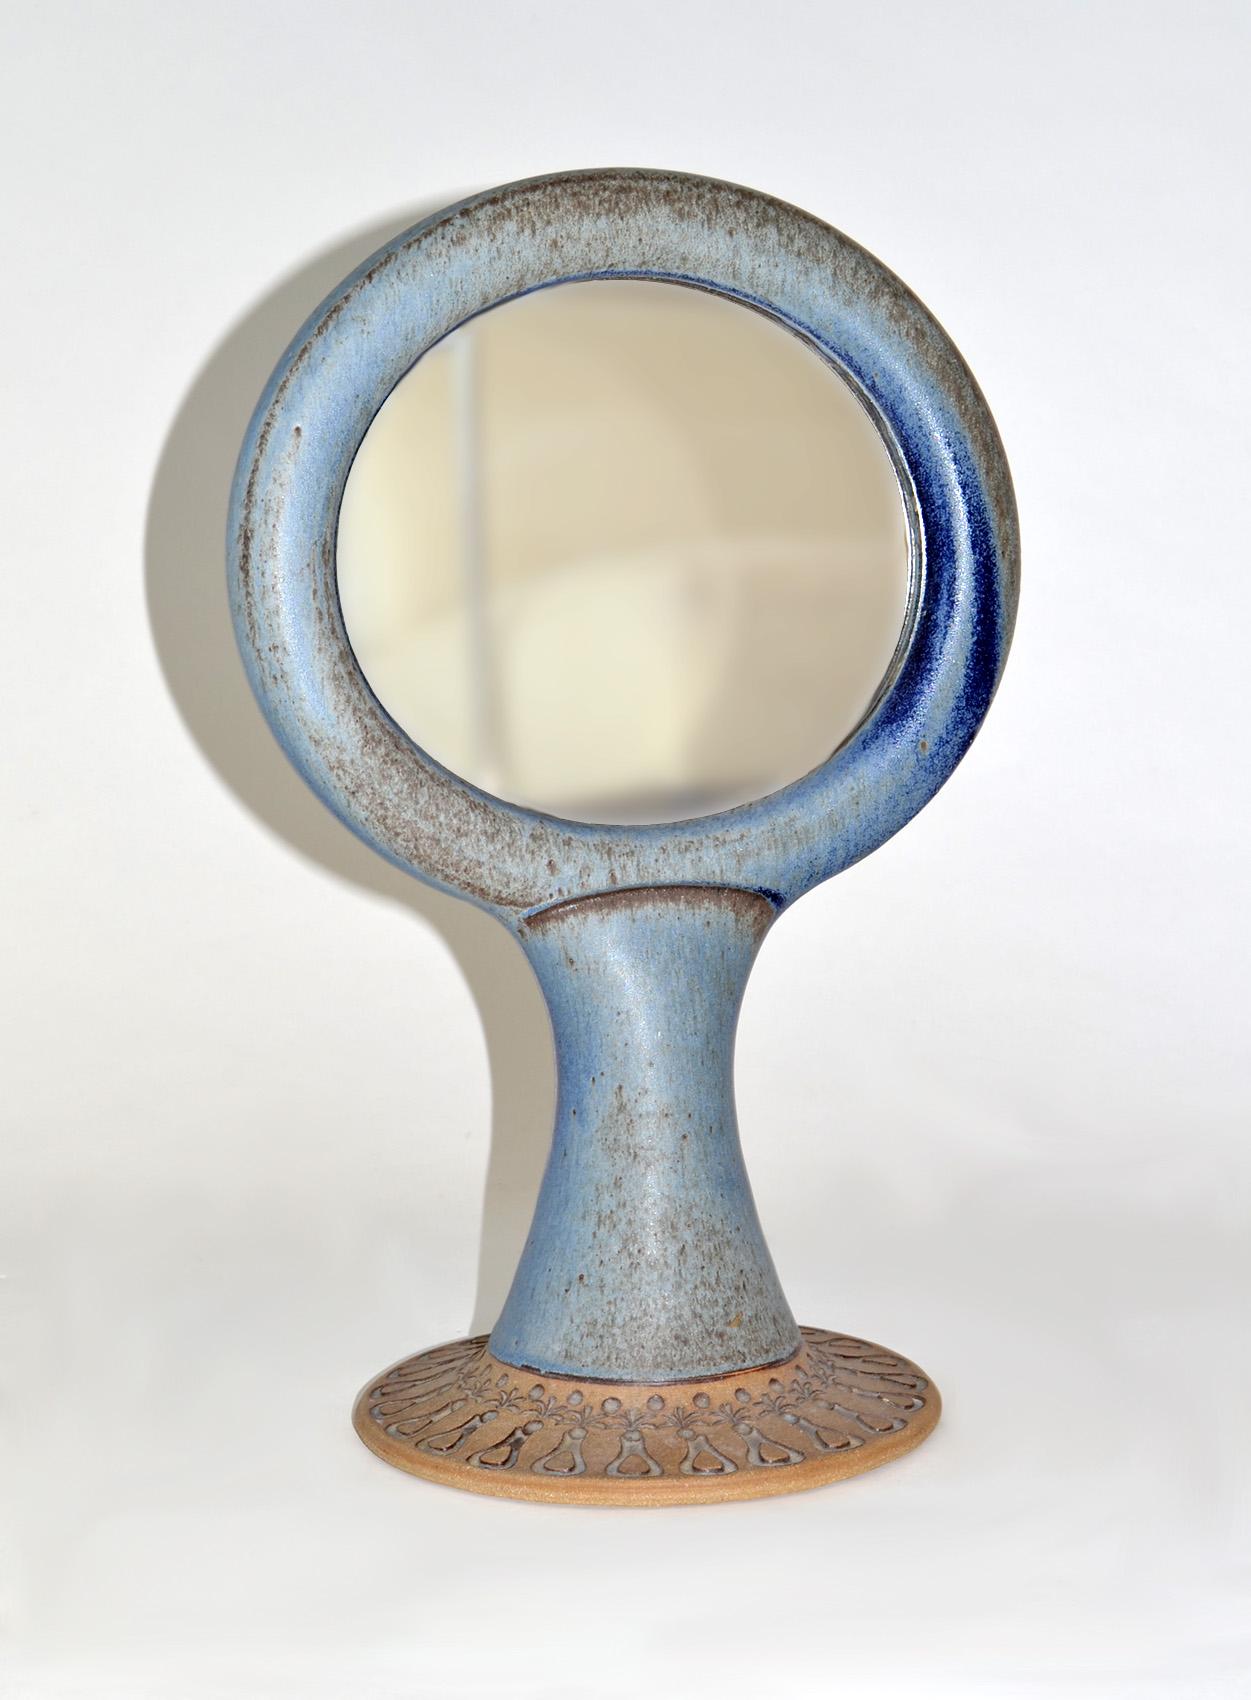 Miroir de table ou de coiffeuse à deux faces en céramique émaillée unique de Studio Pottery 1960s
Magnifique glaçage et incision de style suédois bleu et brun. Répétition du motif organique à la base. Dans le style de Stig Carlsson ou Gunnar Nylund.